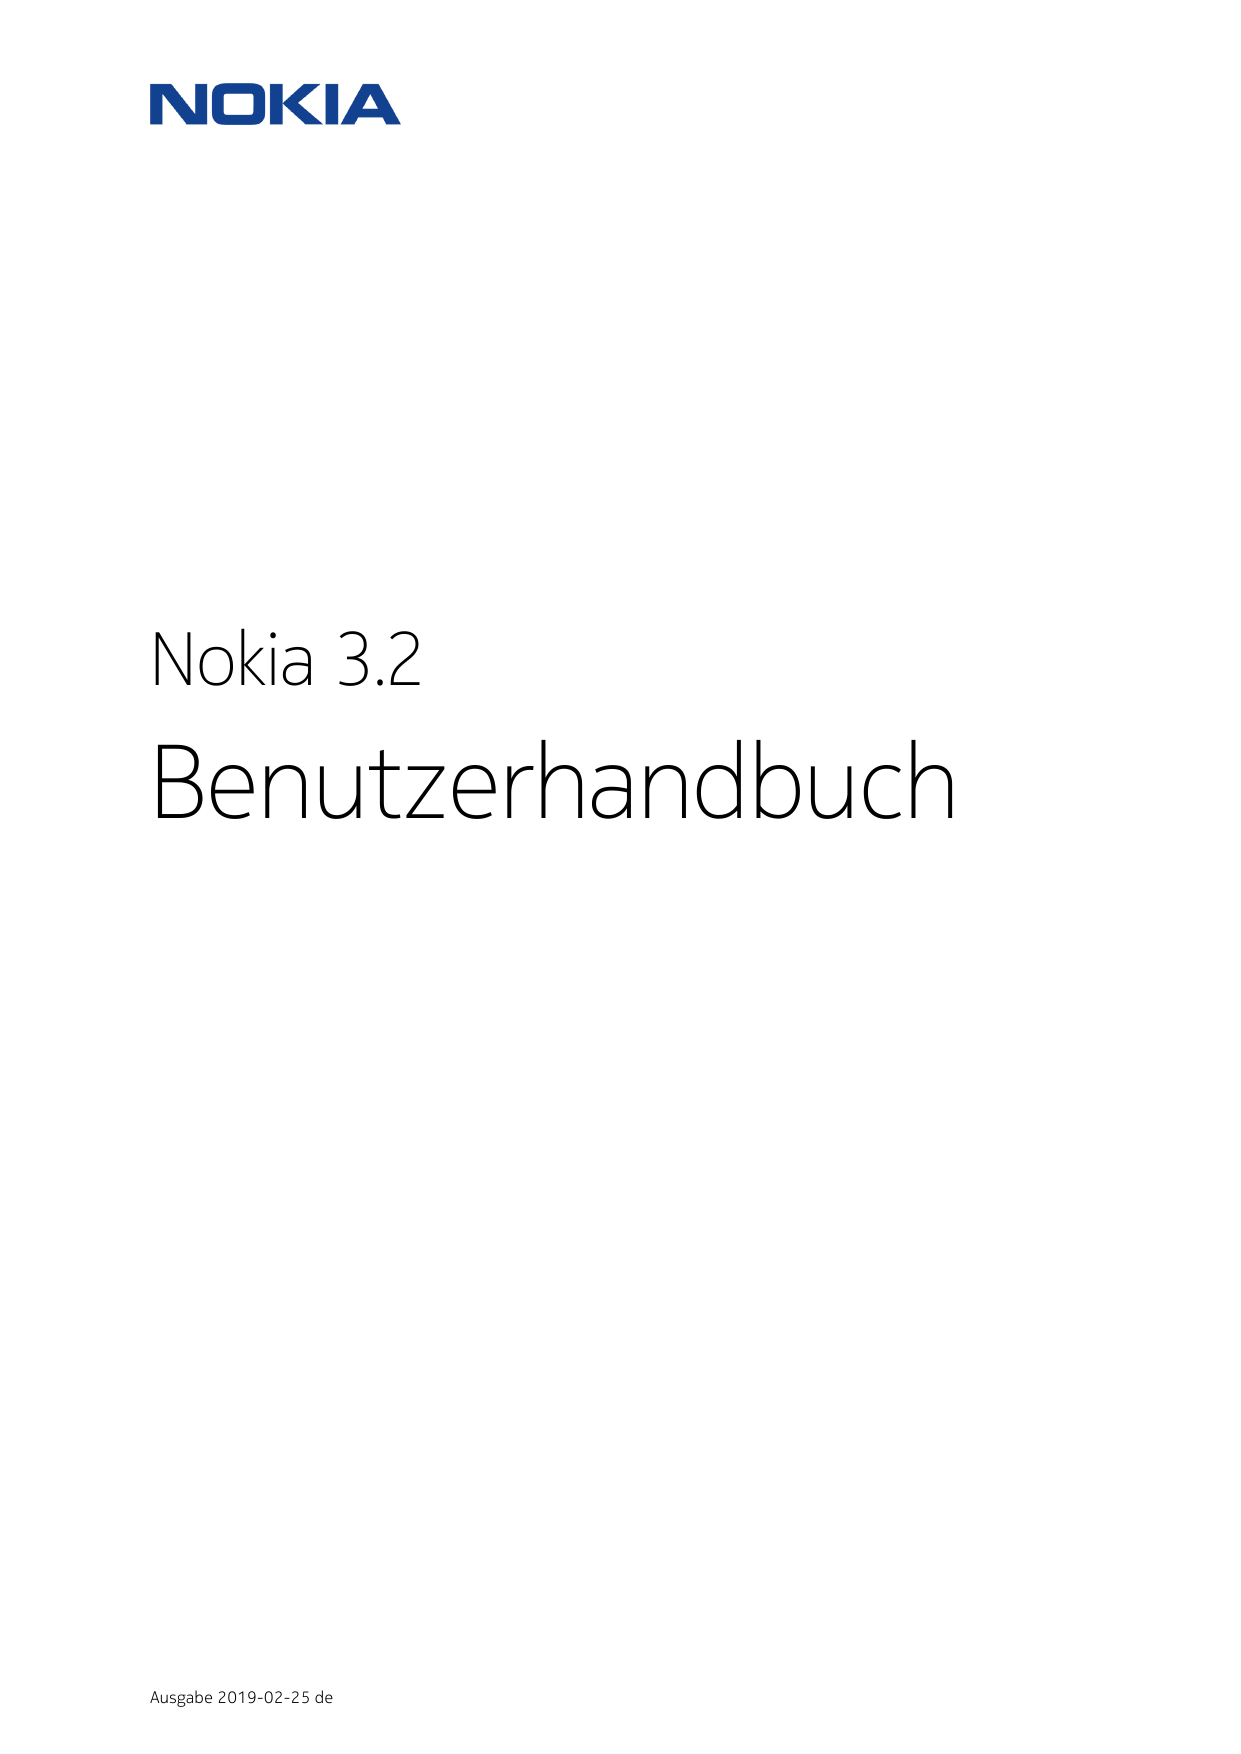 Nokia 3.2BenutzerhandbuchAusgabe 2019-02-25 de